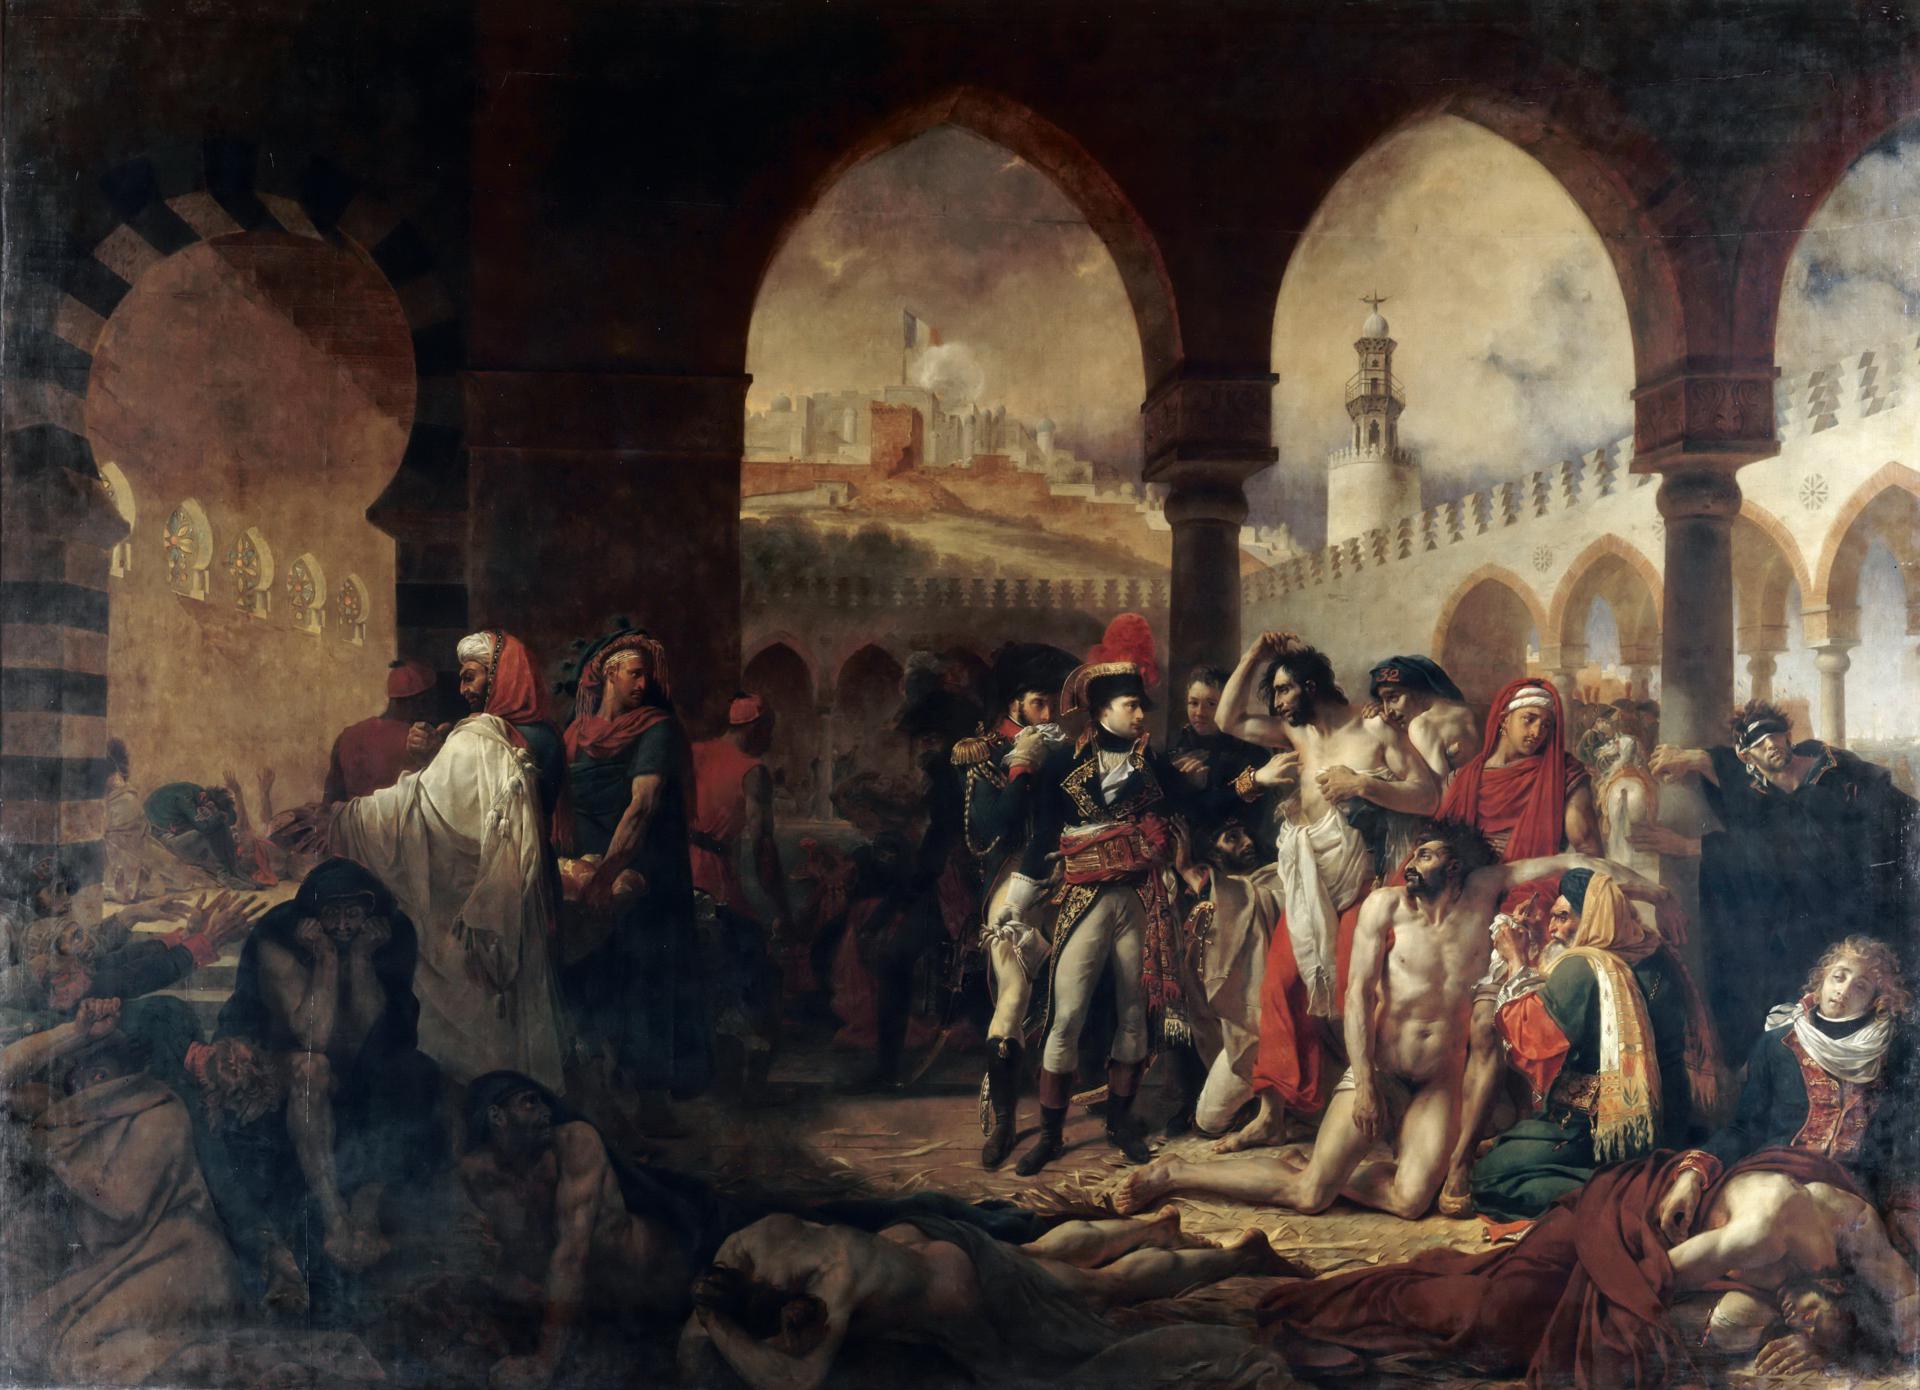 0004_格罗_Antoine-Jean Gros —— Napoleon Bonaparte Visiting the Plague-Stricken in Jaffa_4018x2909PX_TIF_72DPI_34_0